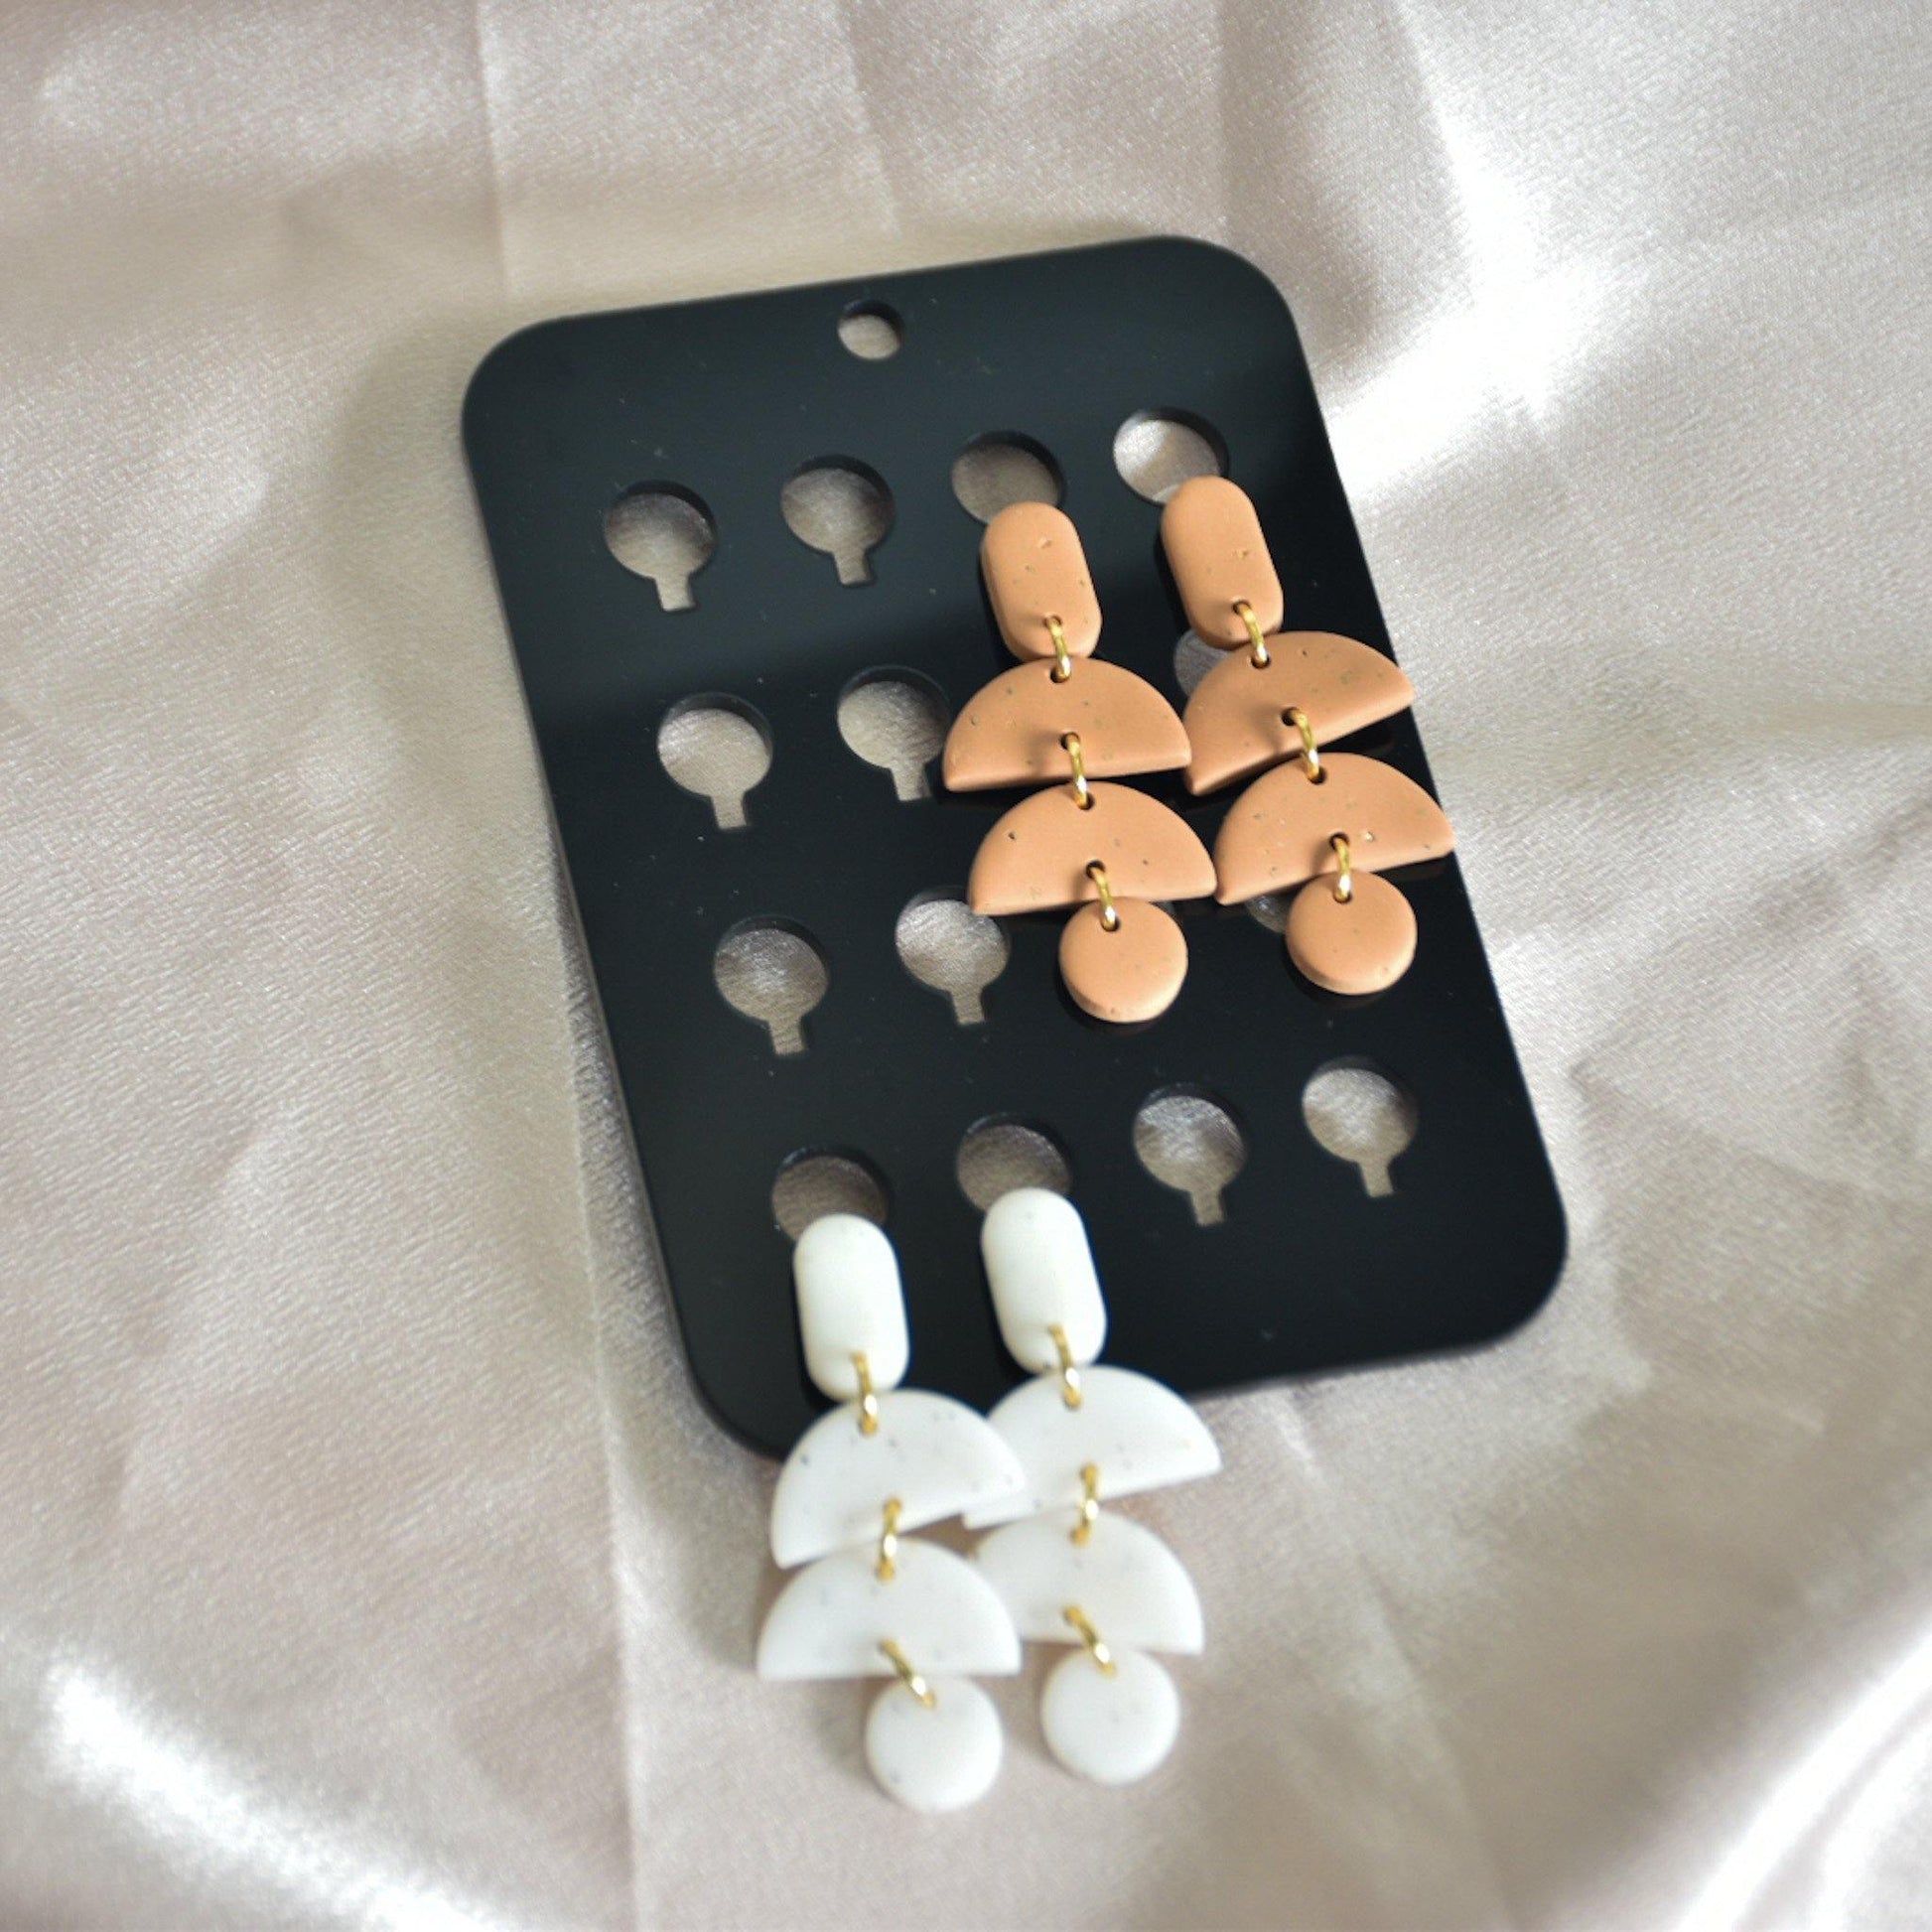 Acrylic Earring Card - handmade earrings - handcrafted earrings - Saint Petersburg, Florida